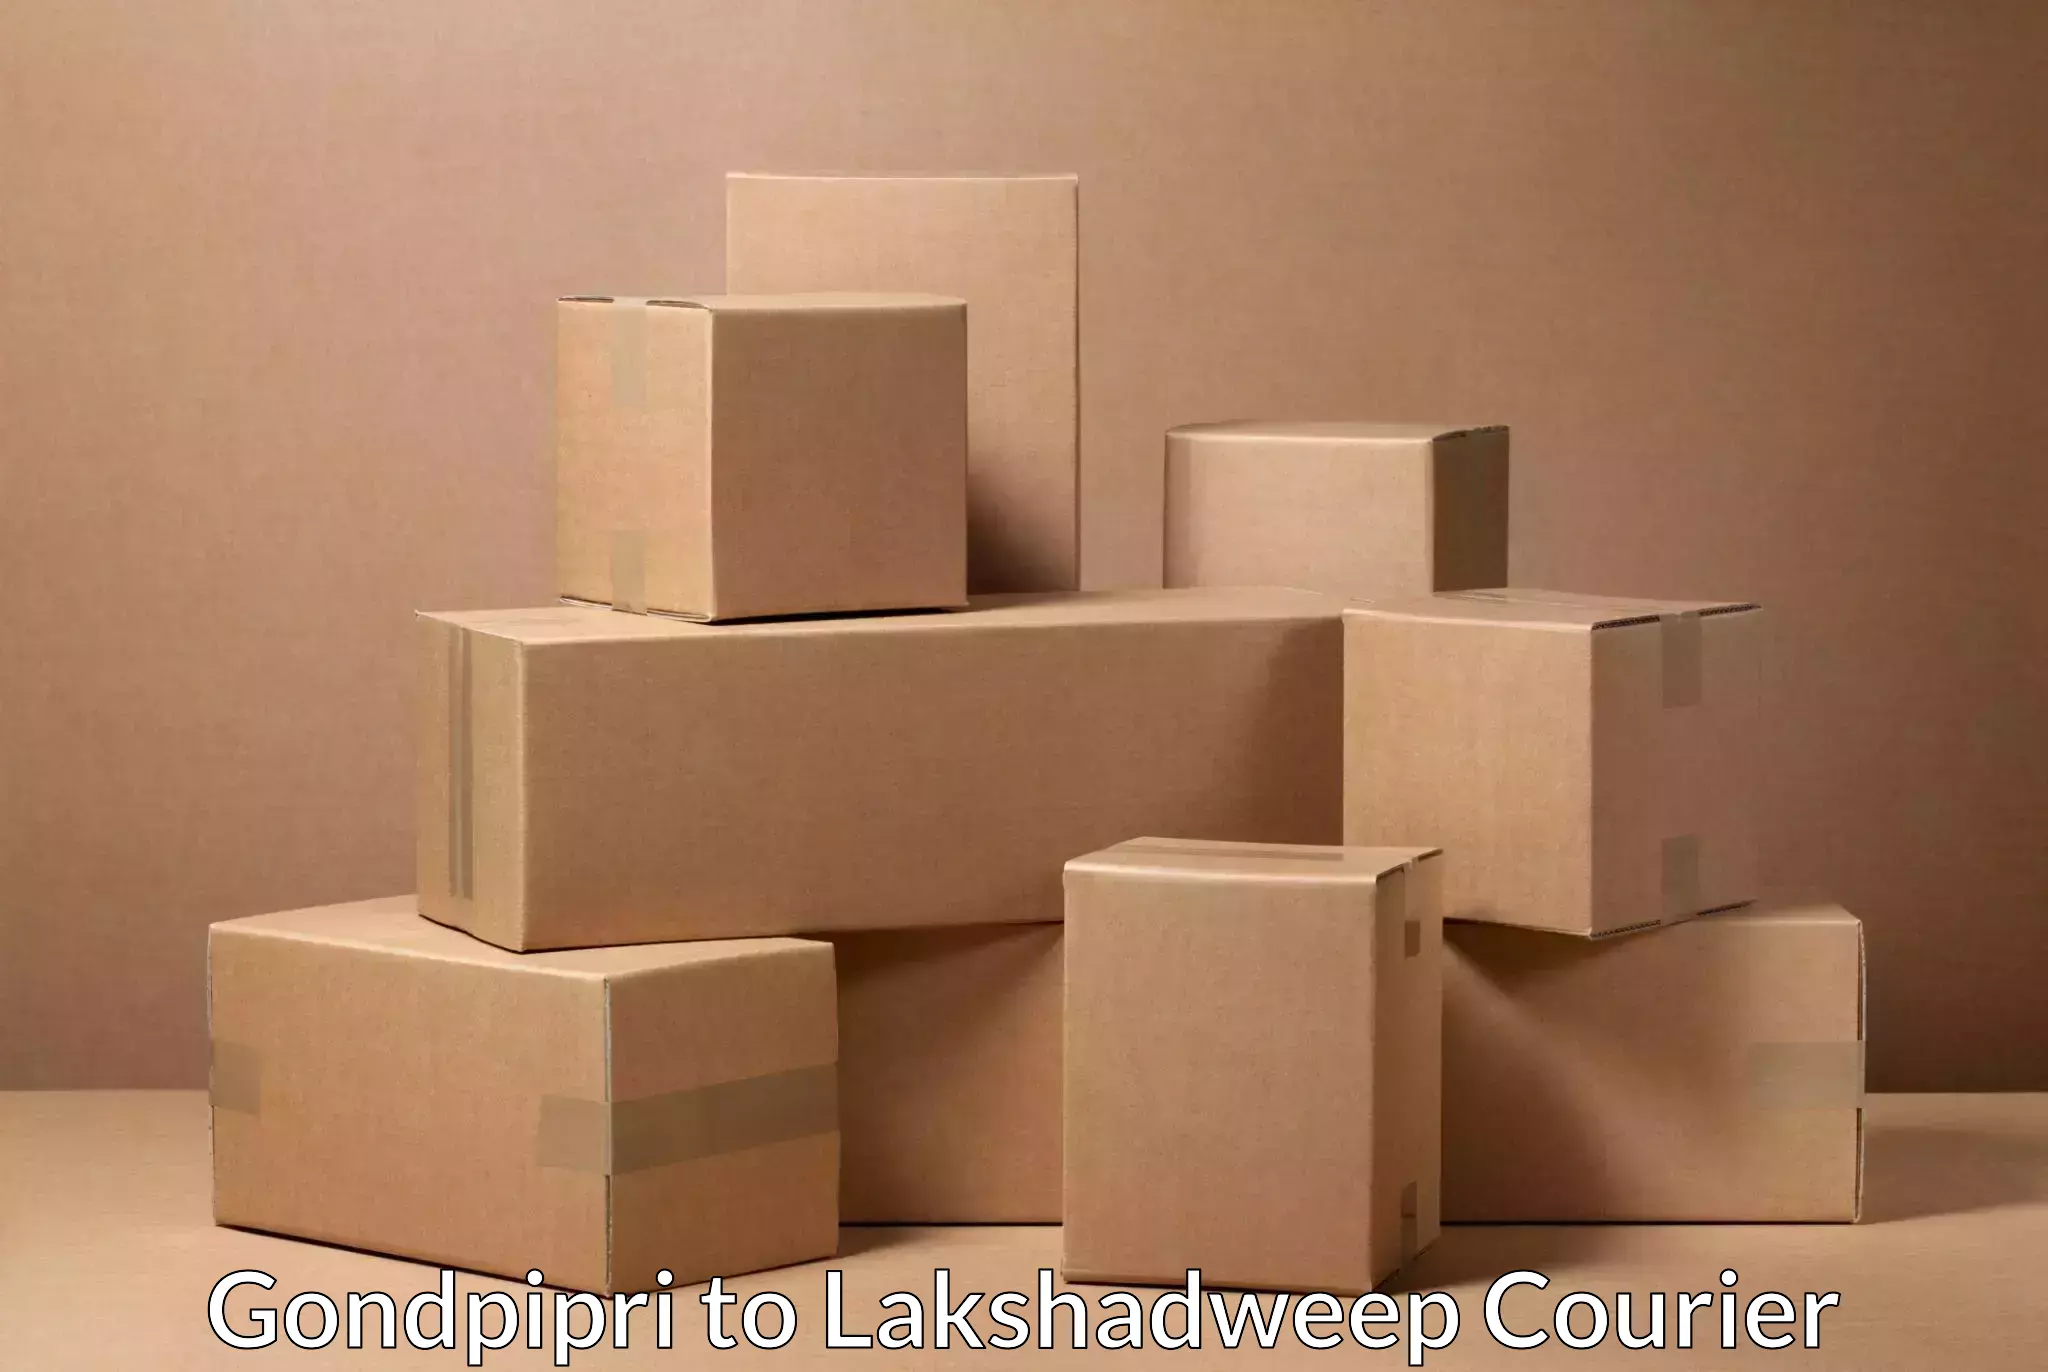 International parcel service Gondpipri to Lakshadweep